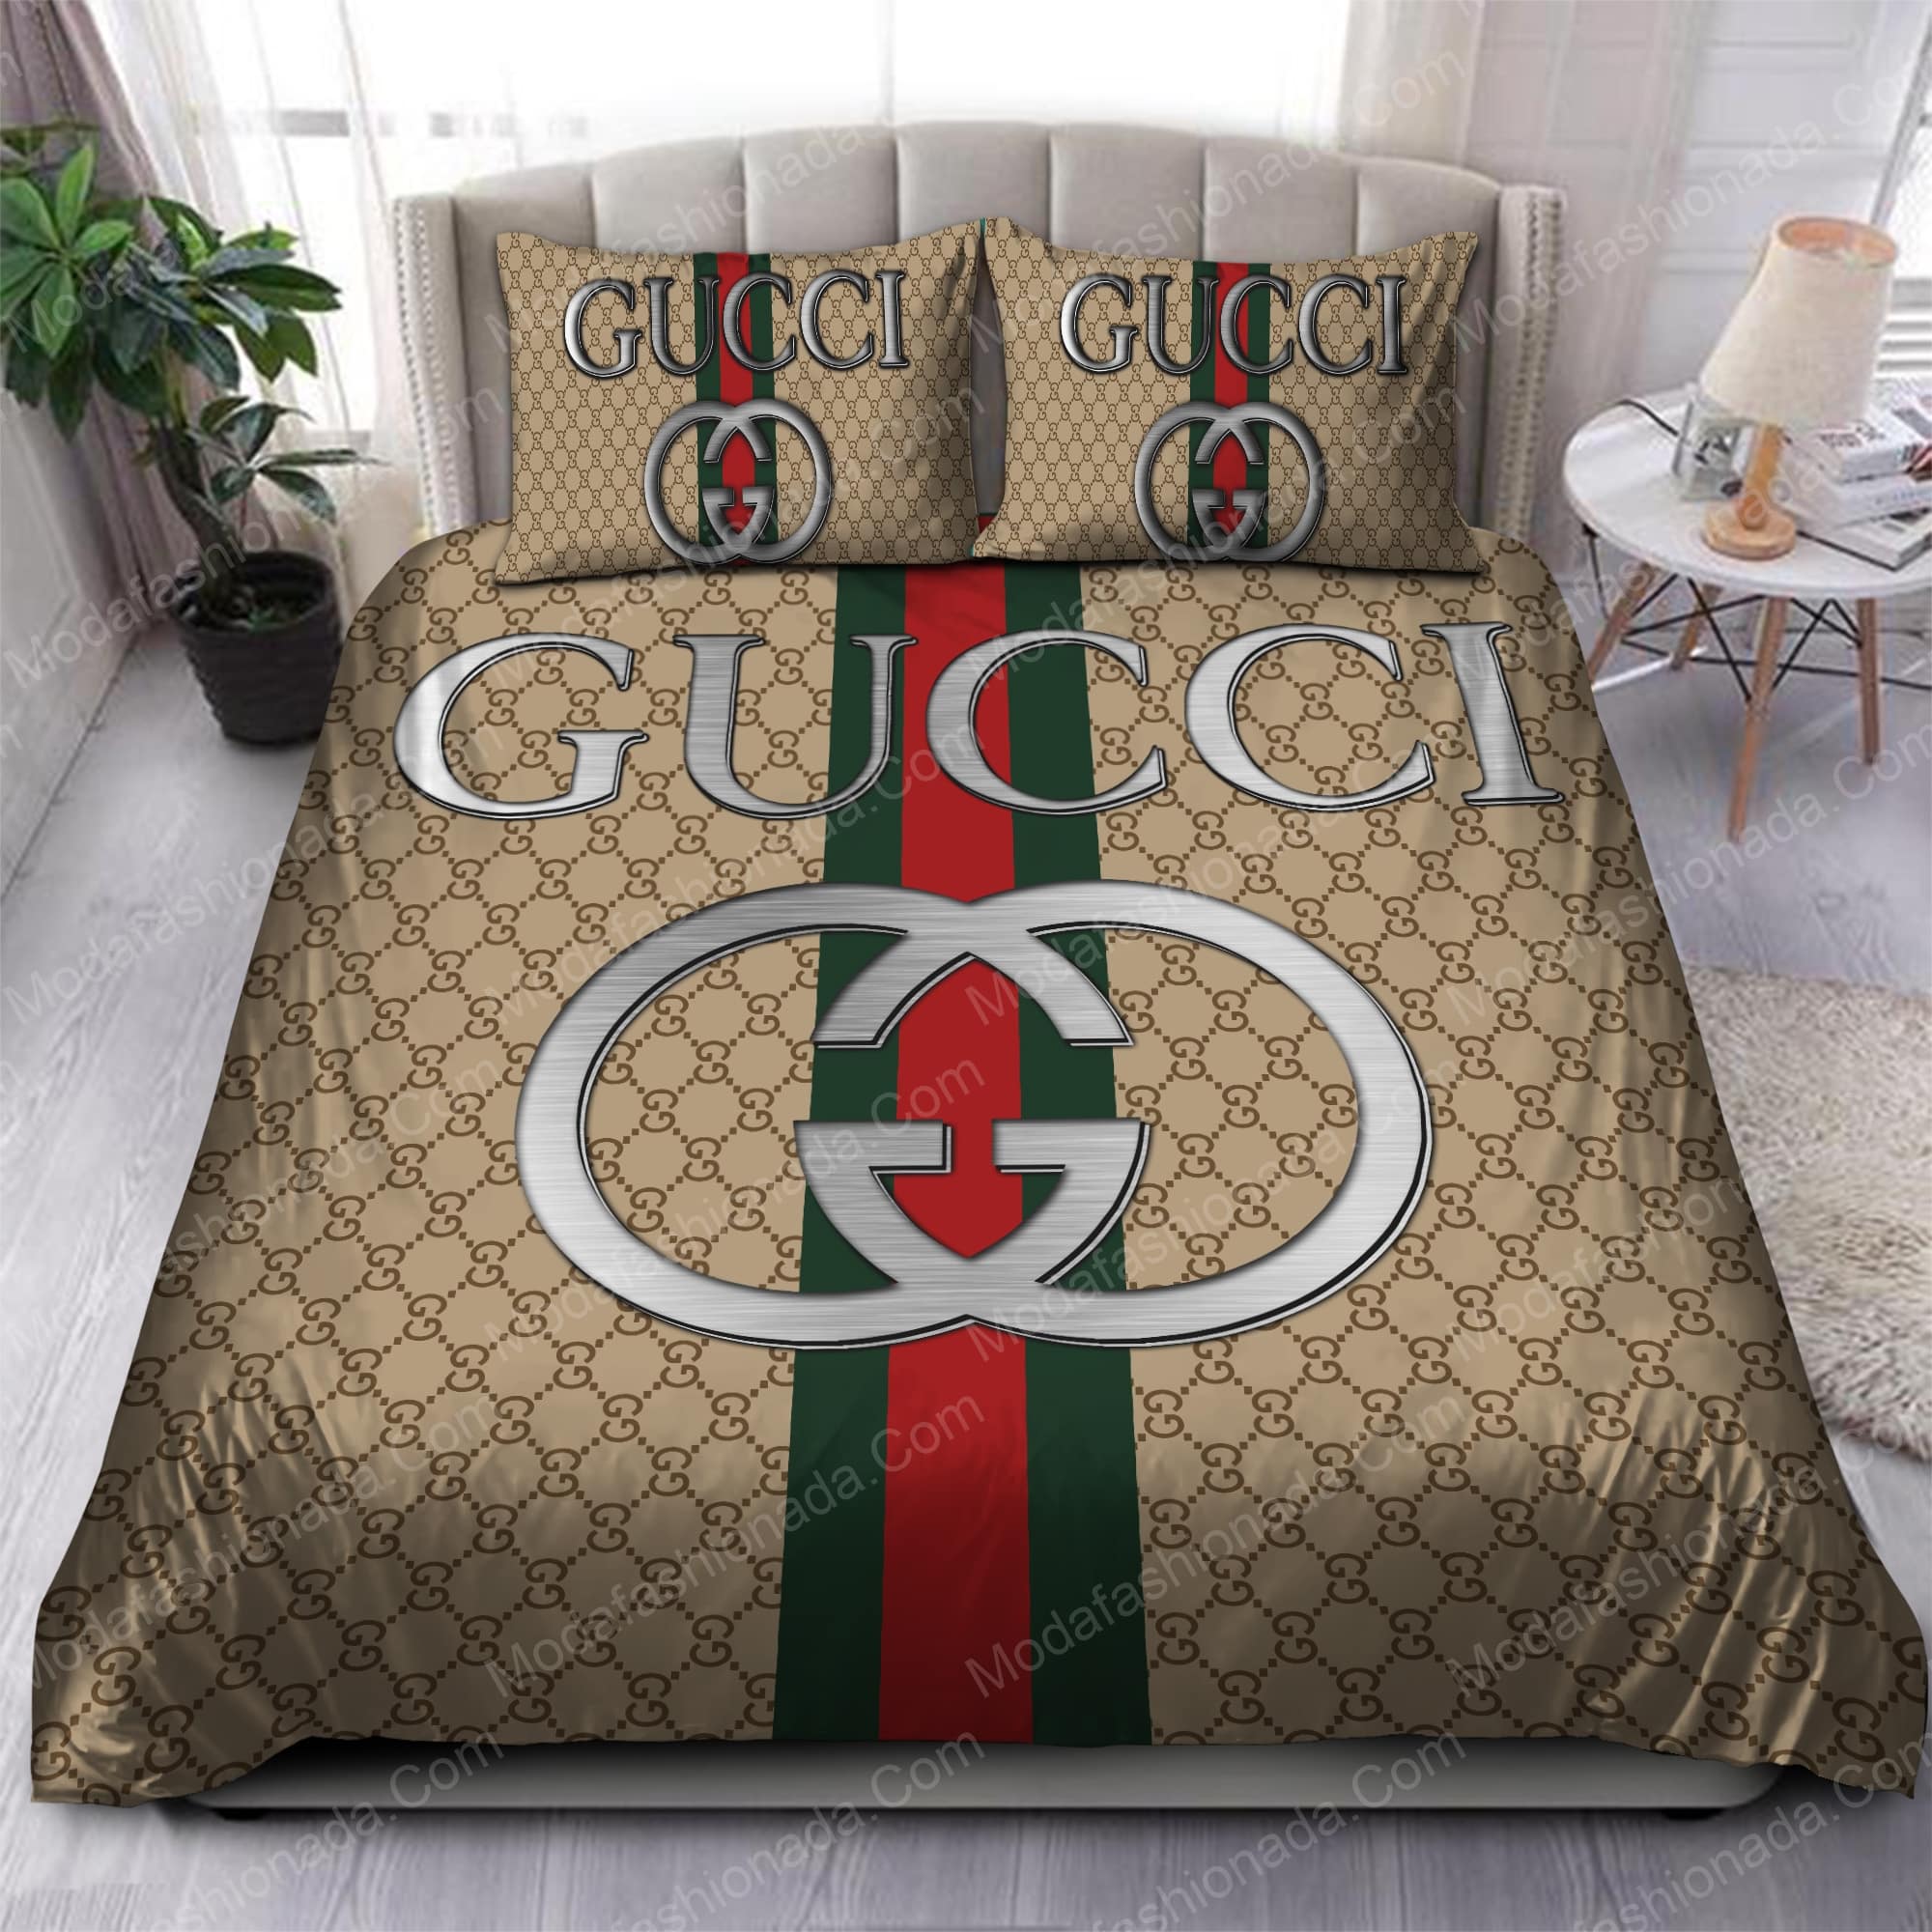 Buy Gucci Bedding Sets Bed Sets